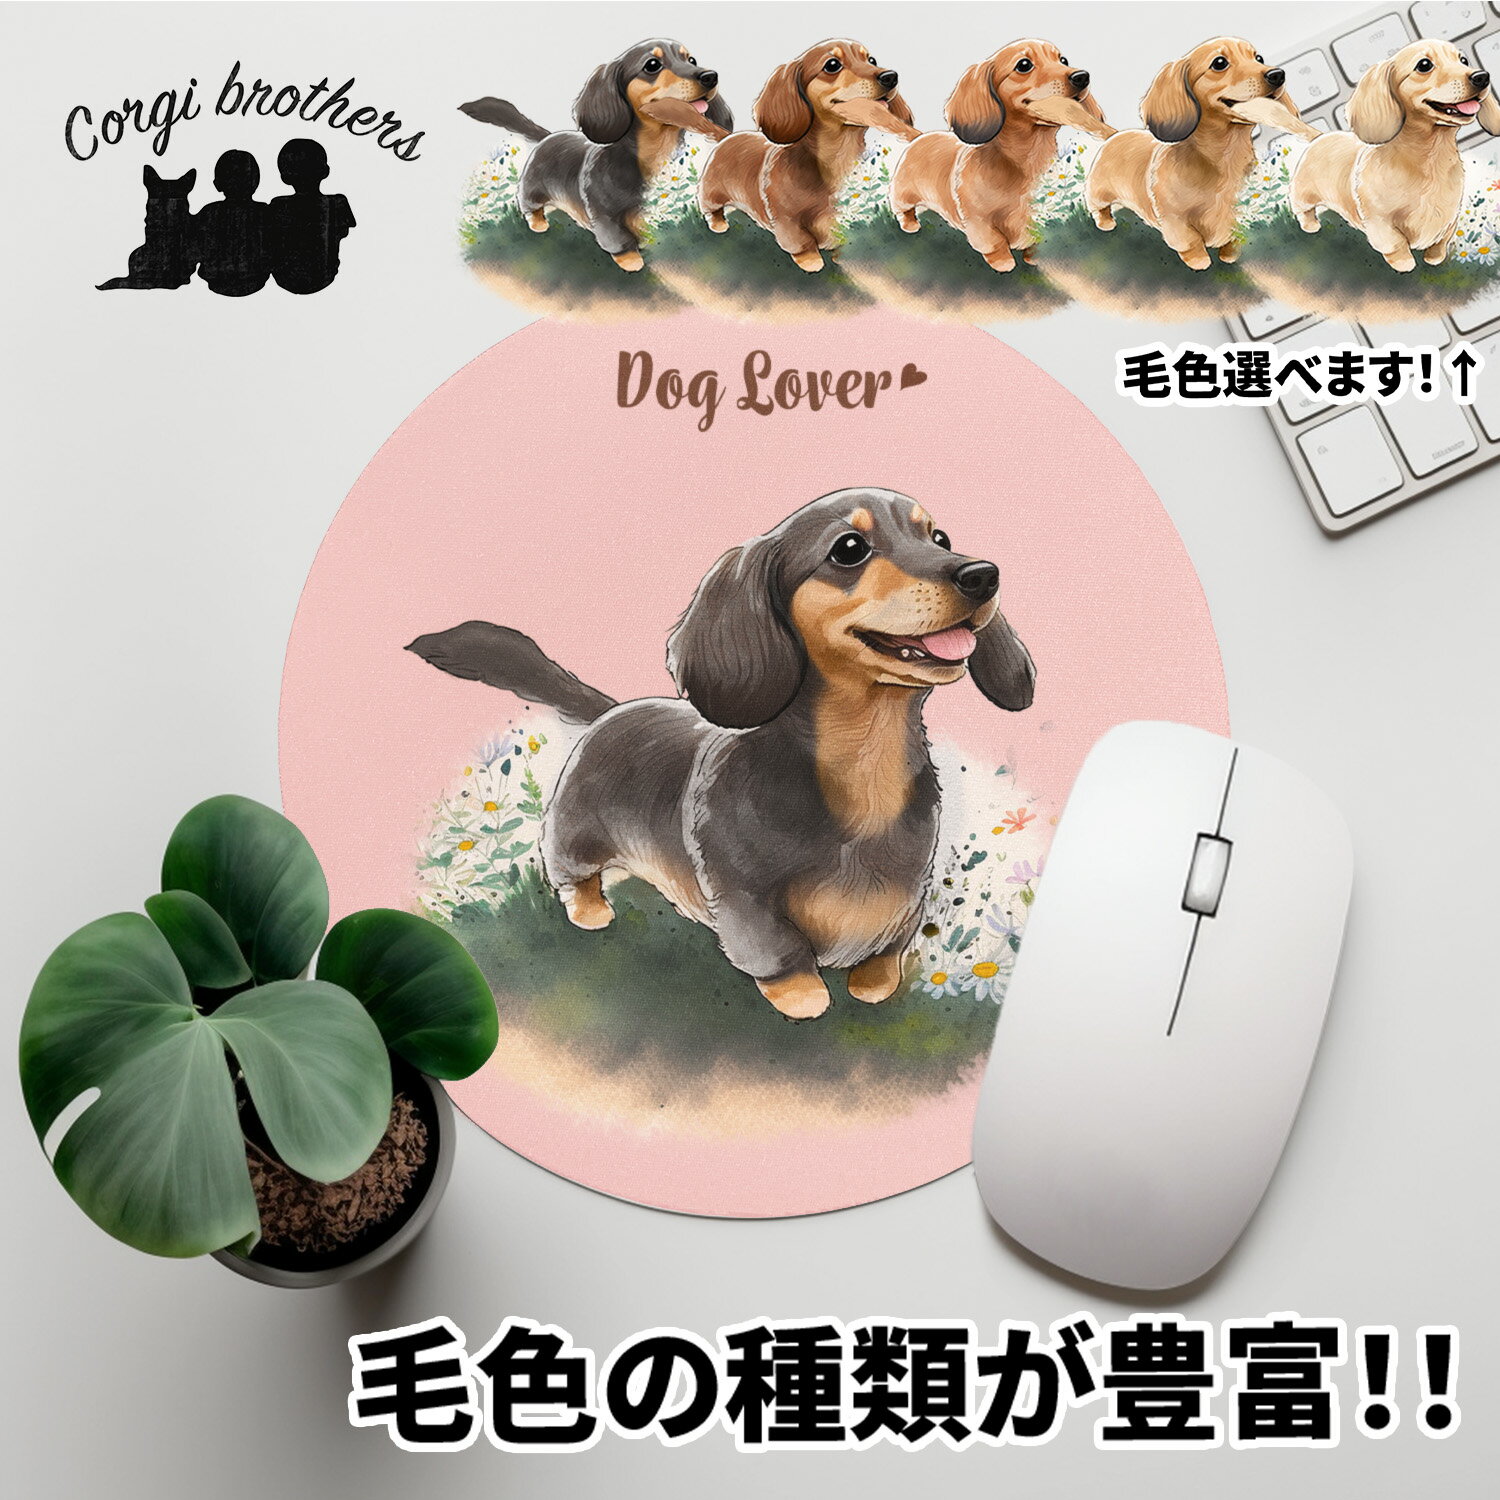 ダックスフンド 犬 マウスパッド かわいい 名入...の商品画像